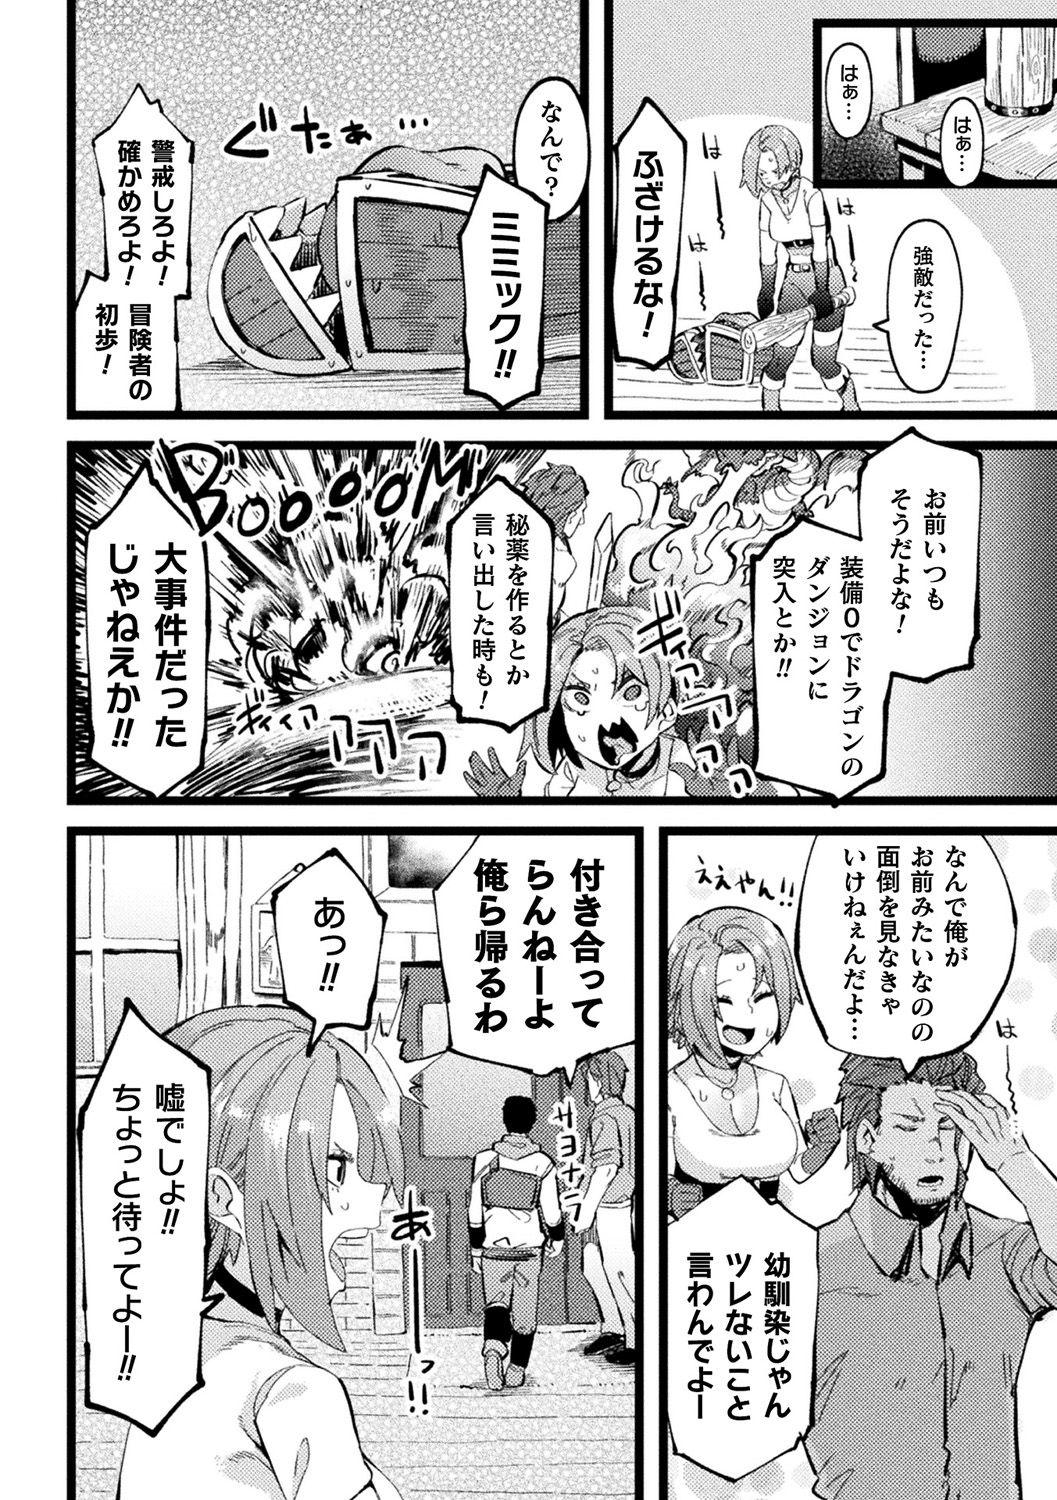 [Anthology] Bessatsu Comic Unreal Ponkotsu Fantasy Heroine H ~Doji o Funde Gyakuten Saretari Ero Trap ni Hamattari!?~ Vol. 2 [Digital] 41